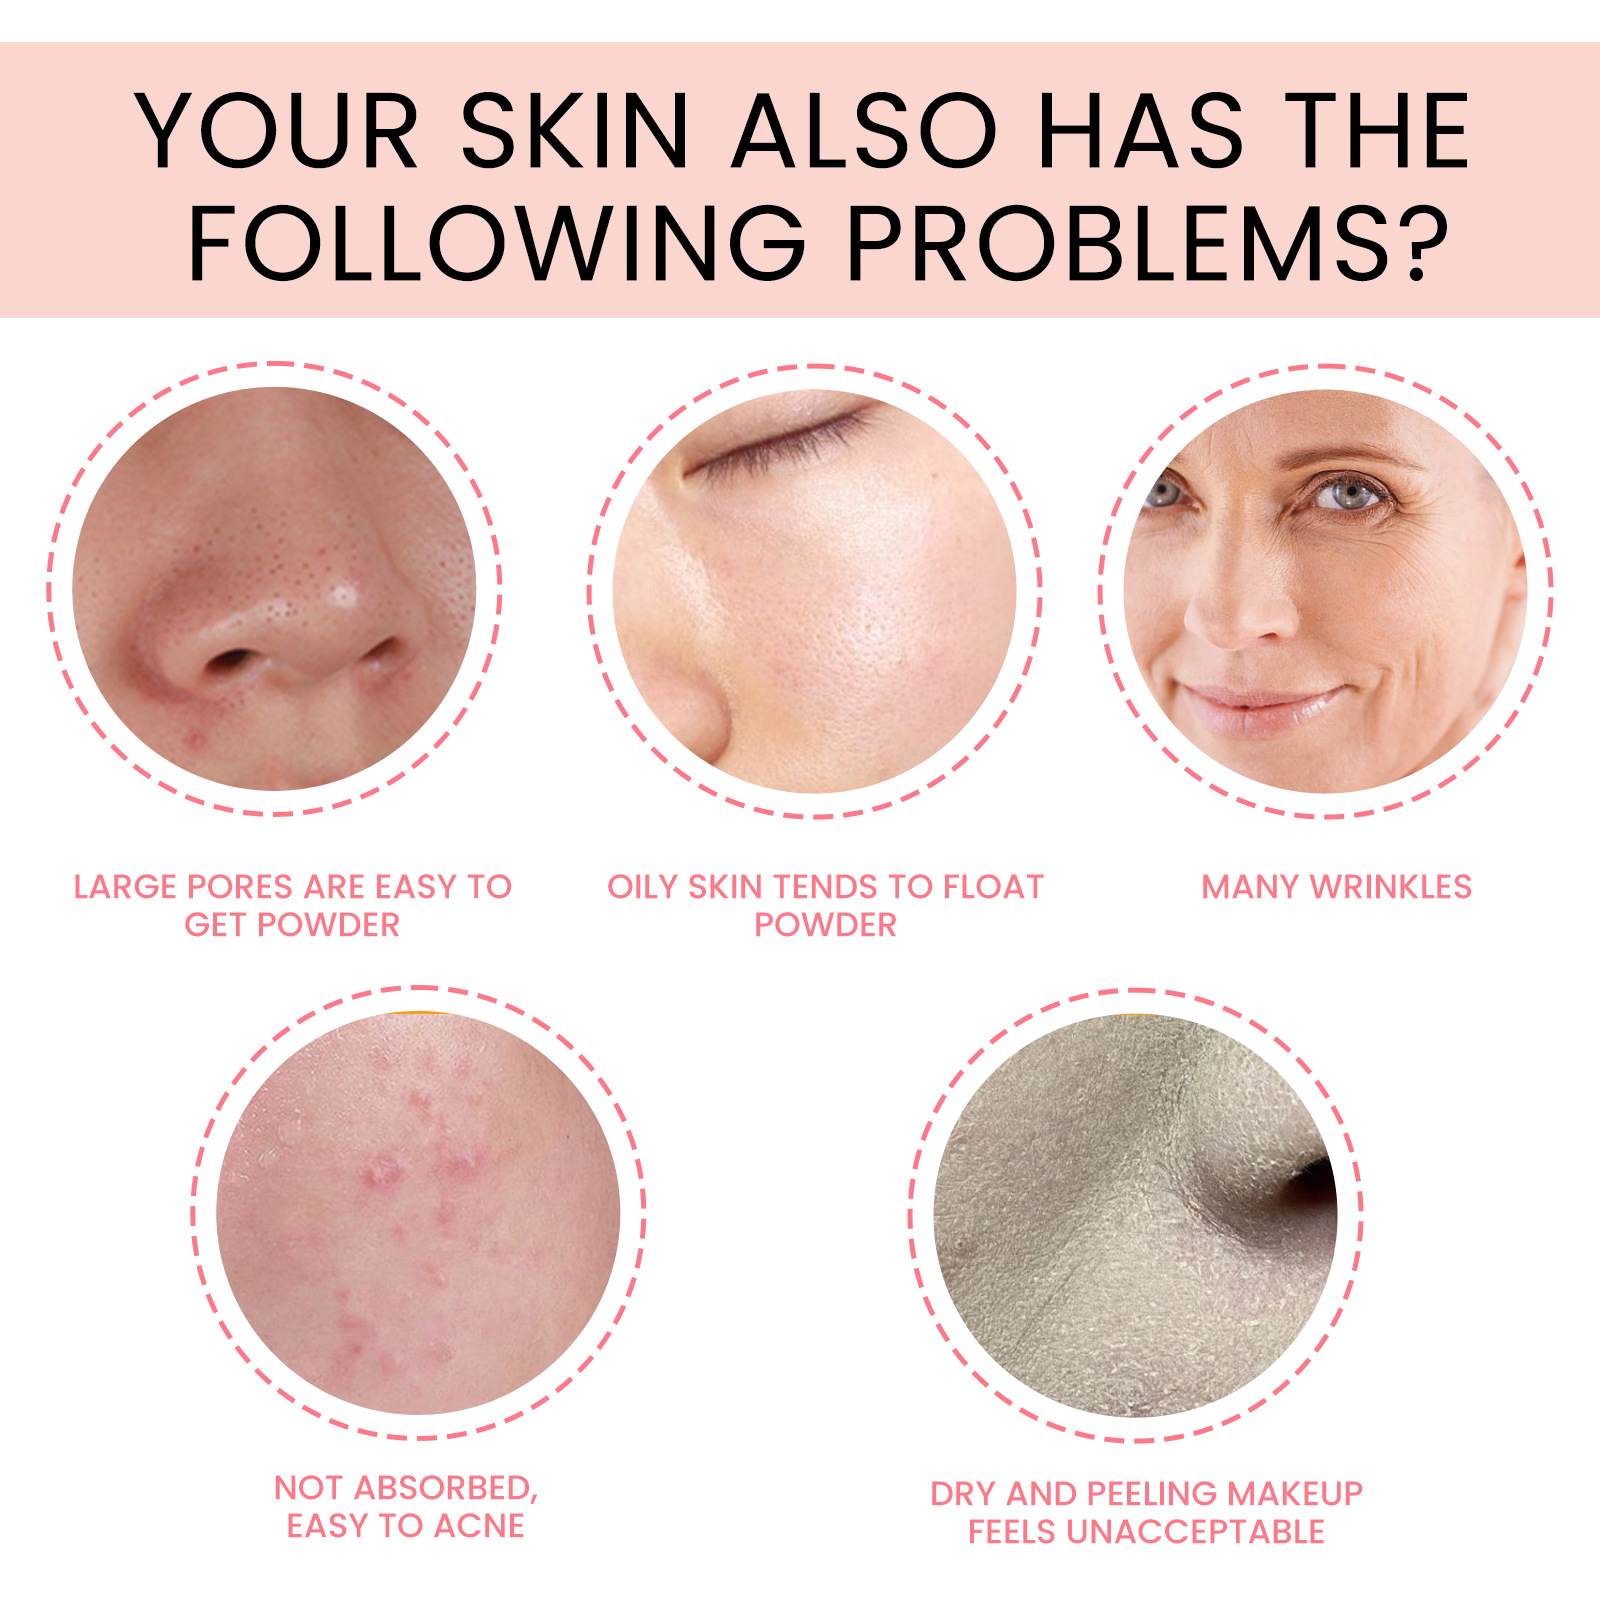 Eelhoe Foundation Essence Desalting Pimple Fine Lines Black Spot Skin Rejuvenation Even Skin Color Concealer